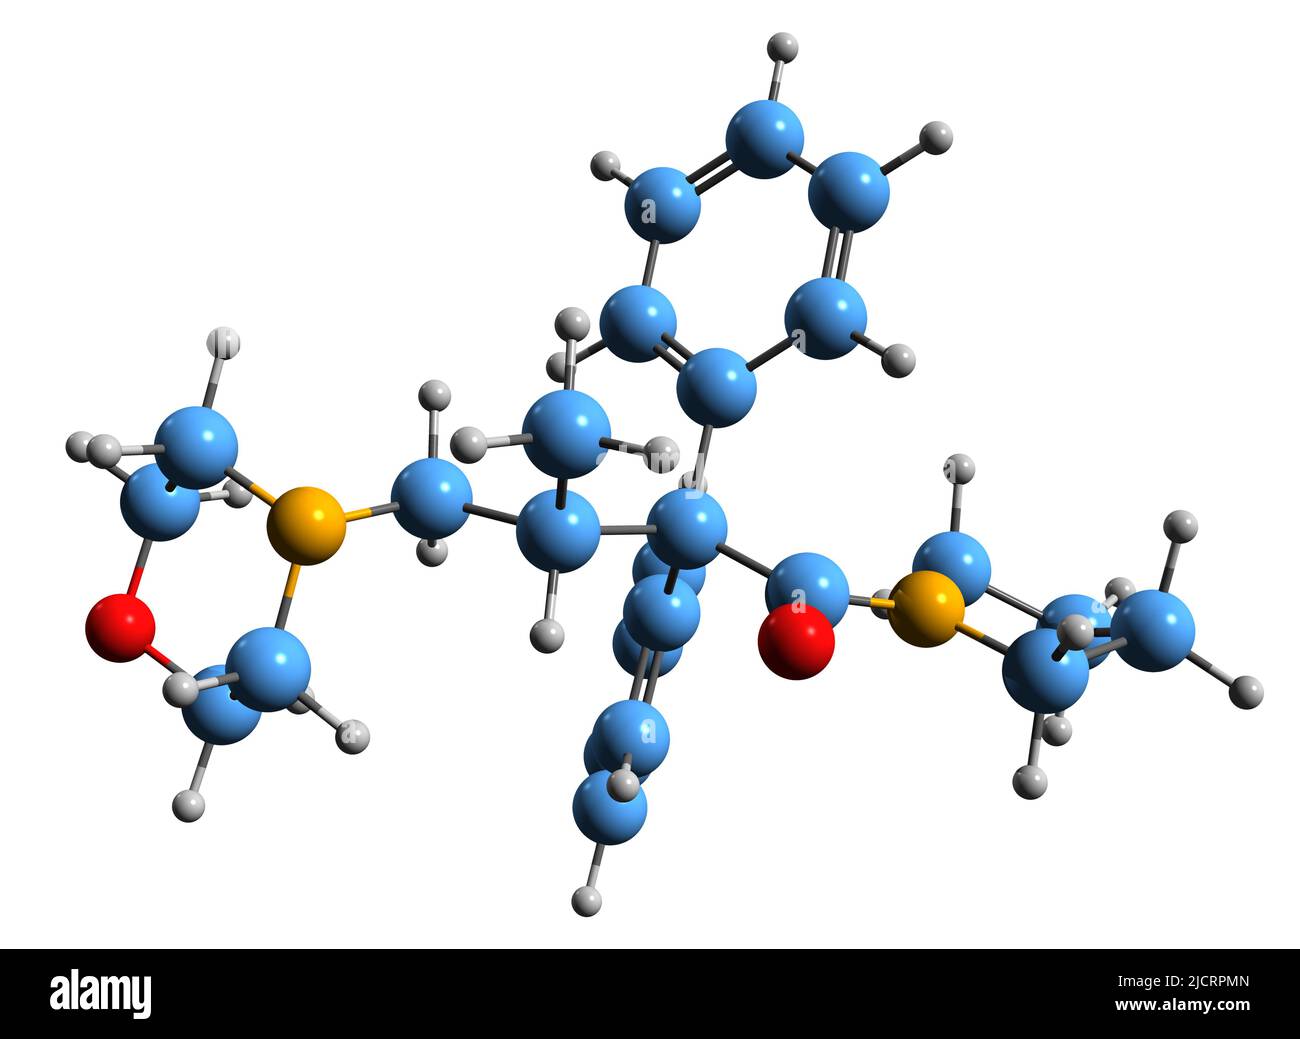 3D Aufnahme der Skelettformel von Dextromoramid - molekulare chemische Struktur des Opioid-Analgetikums, isoliert auf weißem Hintergrund Stockfoto